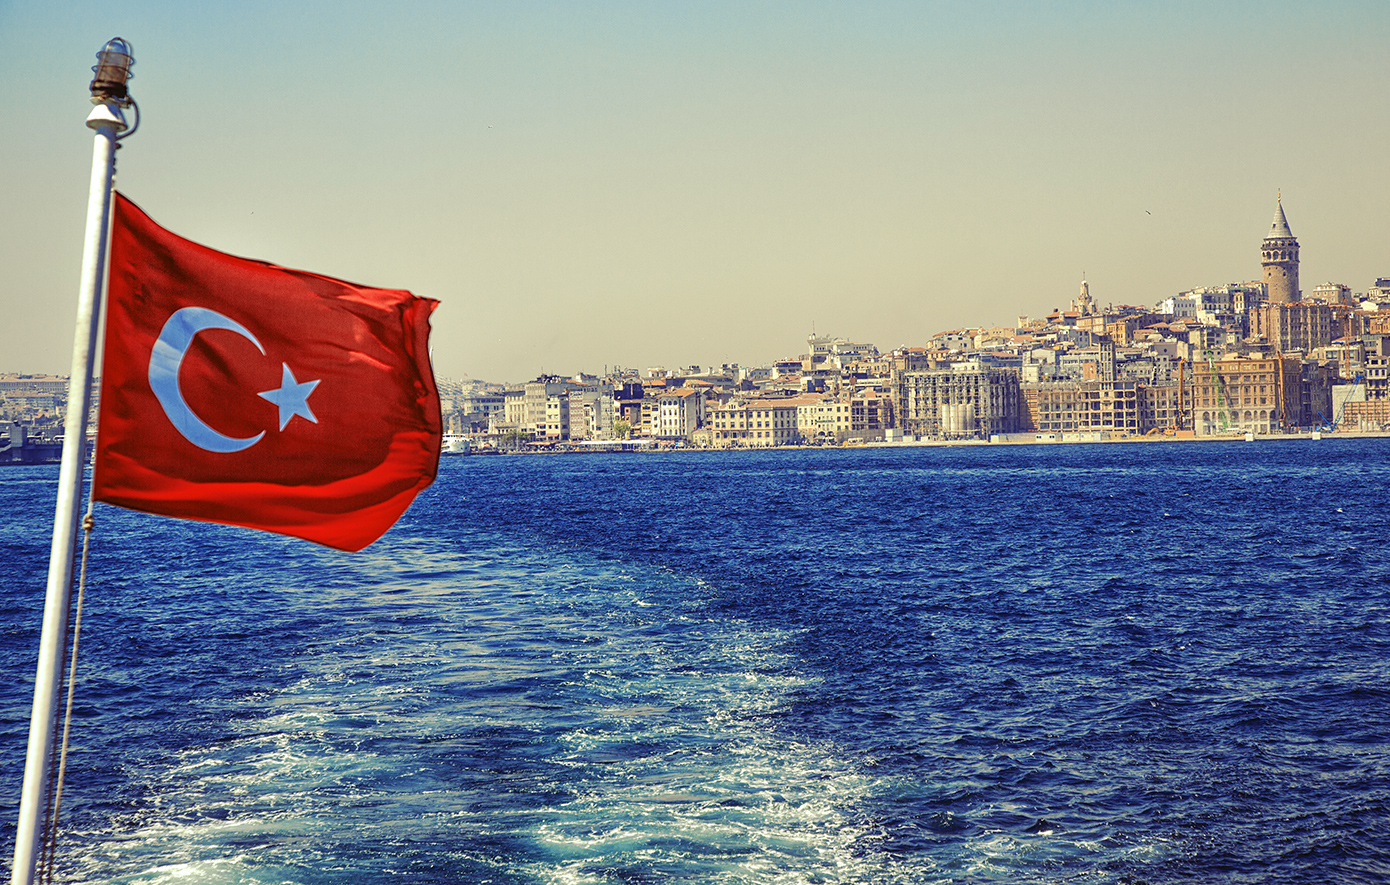 Νέα πρόκληση από την Τουρκία με Navtex σε περιοχή που επικαλύπτει την ελληνική υφαλοκρηπίδα